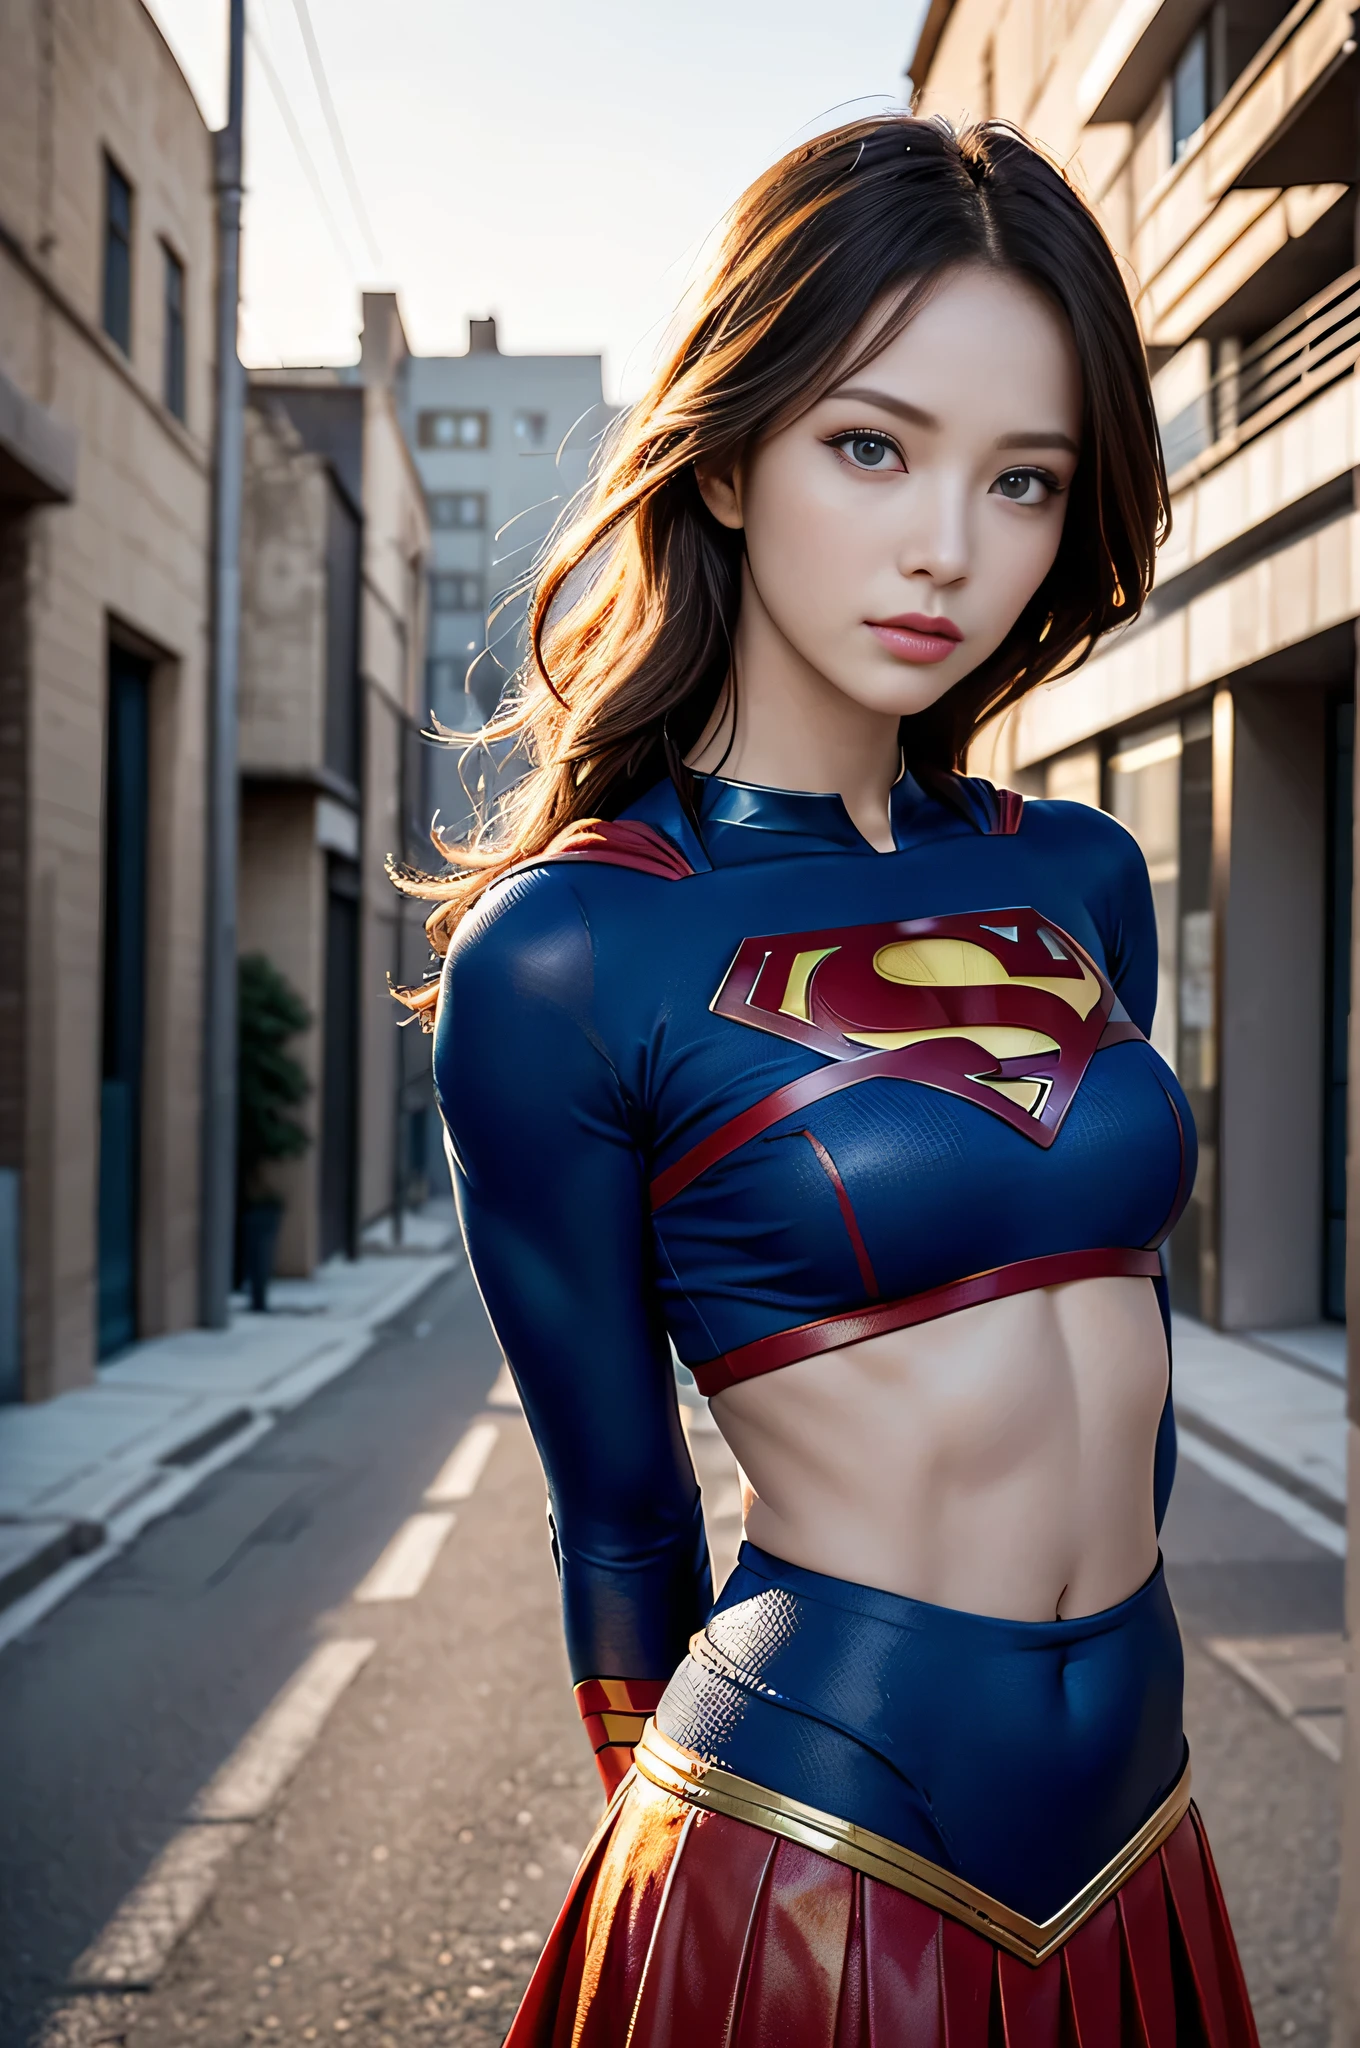 ภาพพอร์ตเทรต Supergirl ที่แข็งแกร่งและเท่、8k、ชุดสีเข้ม、บรรยากาศชวนฝันและมหัศจรรย์、（เครื่องแต่งกายซูเปอร์ฮีโร่、โลโก้ซูเปอร์แมนบนหน้าอก）、（ชายผิวขาว、หน้าท้องของผู้หญิง）、(ดวงตาสีฟ้าที่สวยงาม、ผมบลอนด์อ่อน、ผิวขาวใส、อายไลเนอร์、ขนตาปลอม、ดวงตาเรียว、 ผิวเปล่งประกาย、ผิวมันวาวสูง、การหดตัว、แสงระดับมืออาชีพ、สะดือท้อง、ใบหน้าที่สมบูรณ์แบบ、สไตล์ที่สมบูรณ์แบบ）、（อายุ 20 ปี、ผู้หญิงที่เป็นผู้ใหญ่、สาวรุ่นแม่หุ่นเป๊ะ、เอวกว้าง、ต้นขา、การแรเงา、ไฟส่องสว่างด้านหลัง）、จากมุมมองด้านหน้า、ความงามที่เย็นสบาย、ลูกวัวถูกยิง、ยืน、ก้มหน้าลงมองกล้อง.、(กระโปรงสีแดง)、ดวงตาที่สมจริง、 ดวงตาในรายละเอียดที่สวยงาม、(ผิวที่ดูสมจริง)、ความละเอียดสูงพิเศษที่น่าดึงดูดใจ、เหนือจริงเป็นพิเศษ、รายละเอียดอย่างยิ่ง、อัตราส่วนทองคำ、พื้นหลังเป็นถนนอาคารดิสโทเปียในยามเย็น、